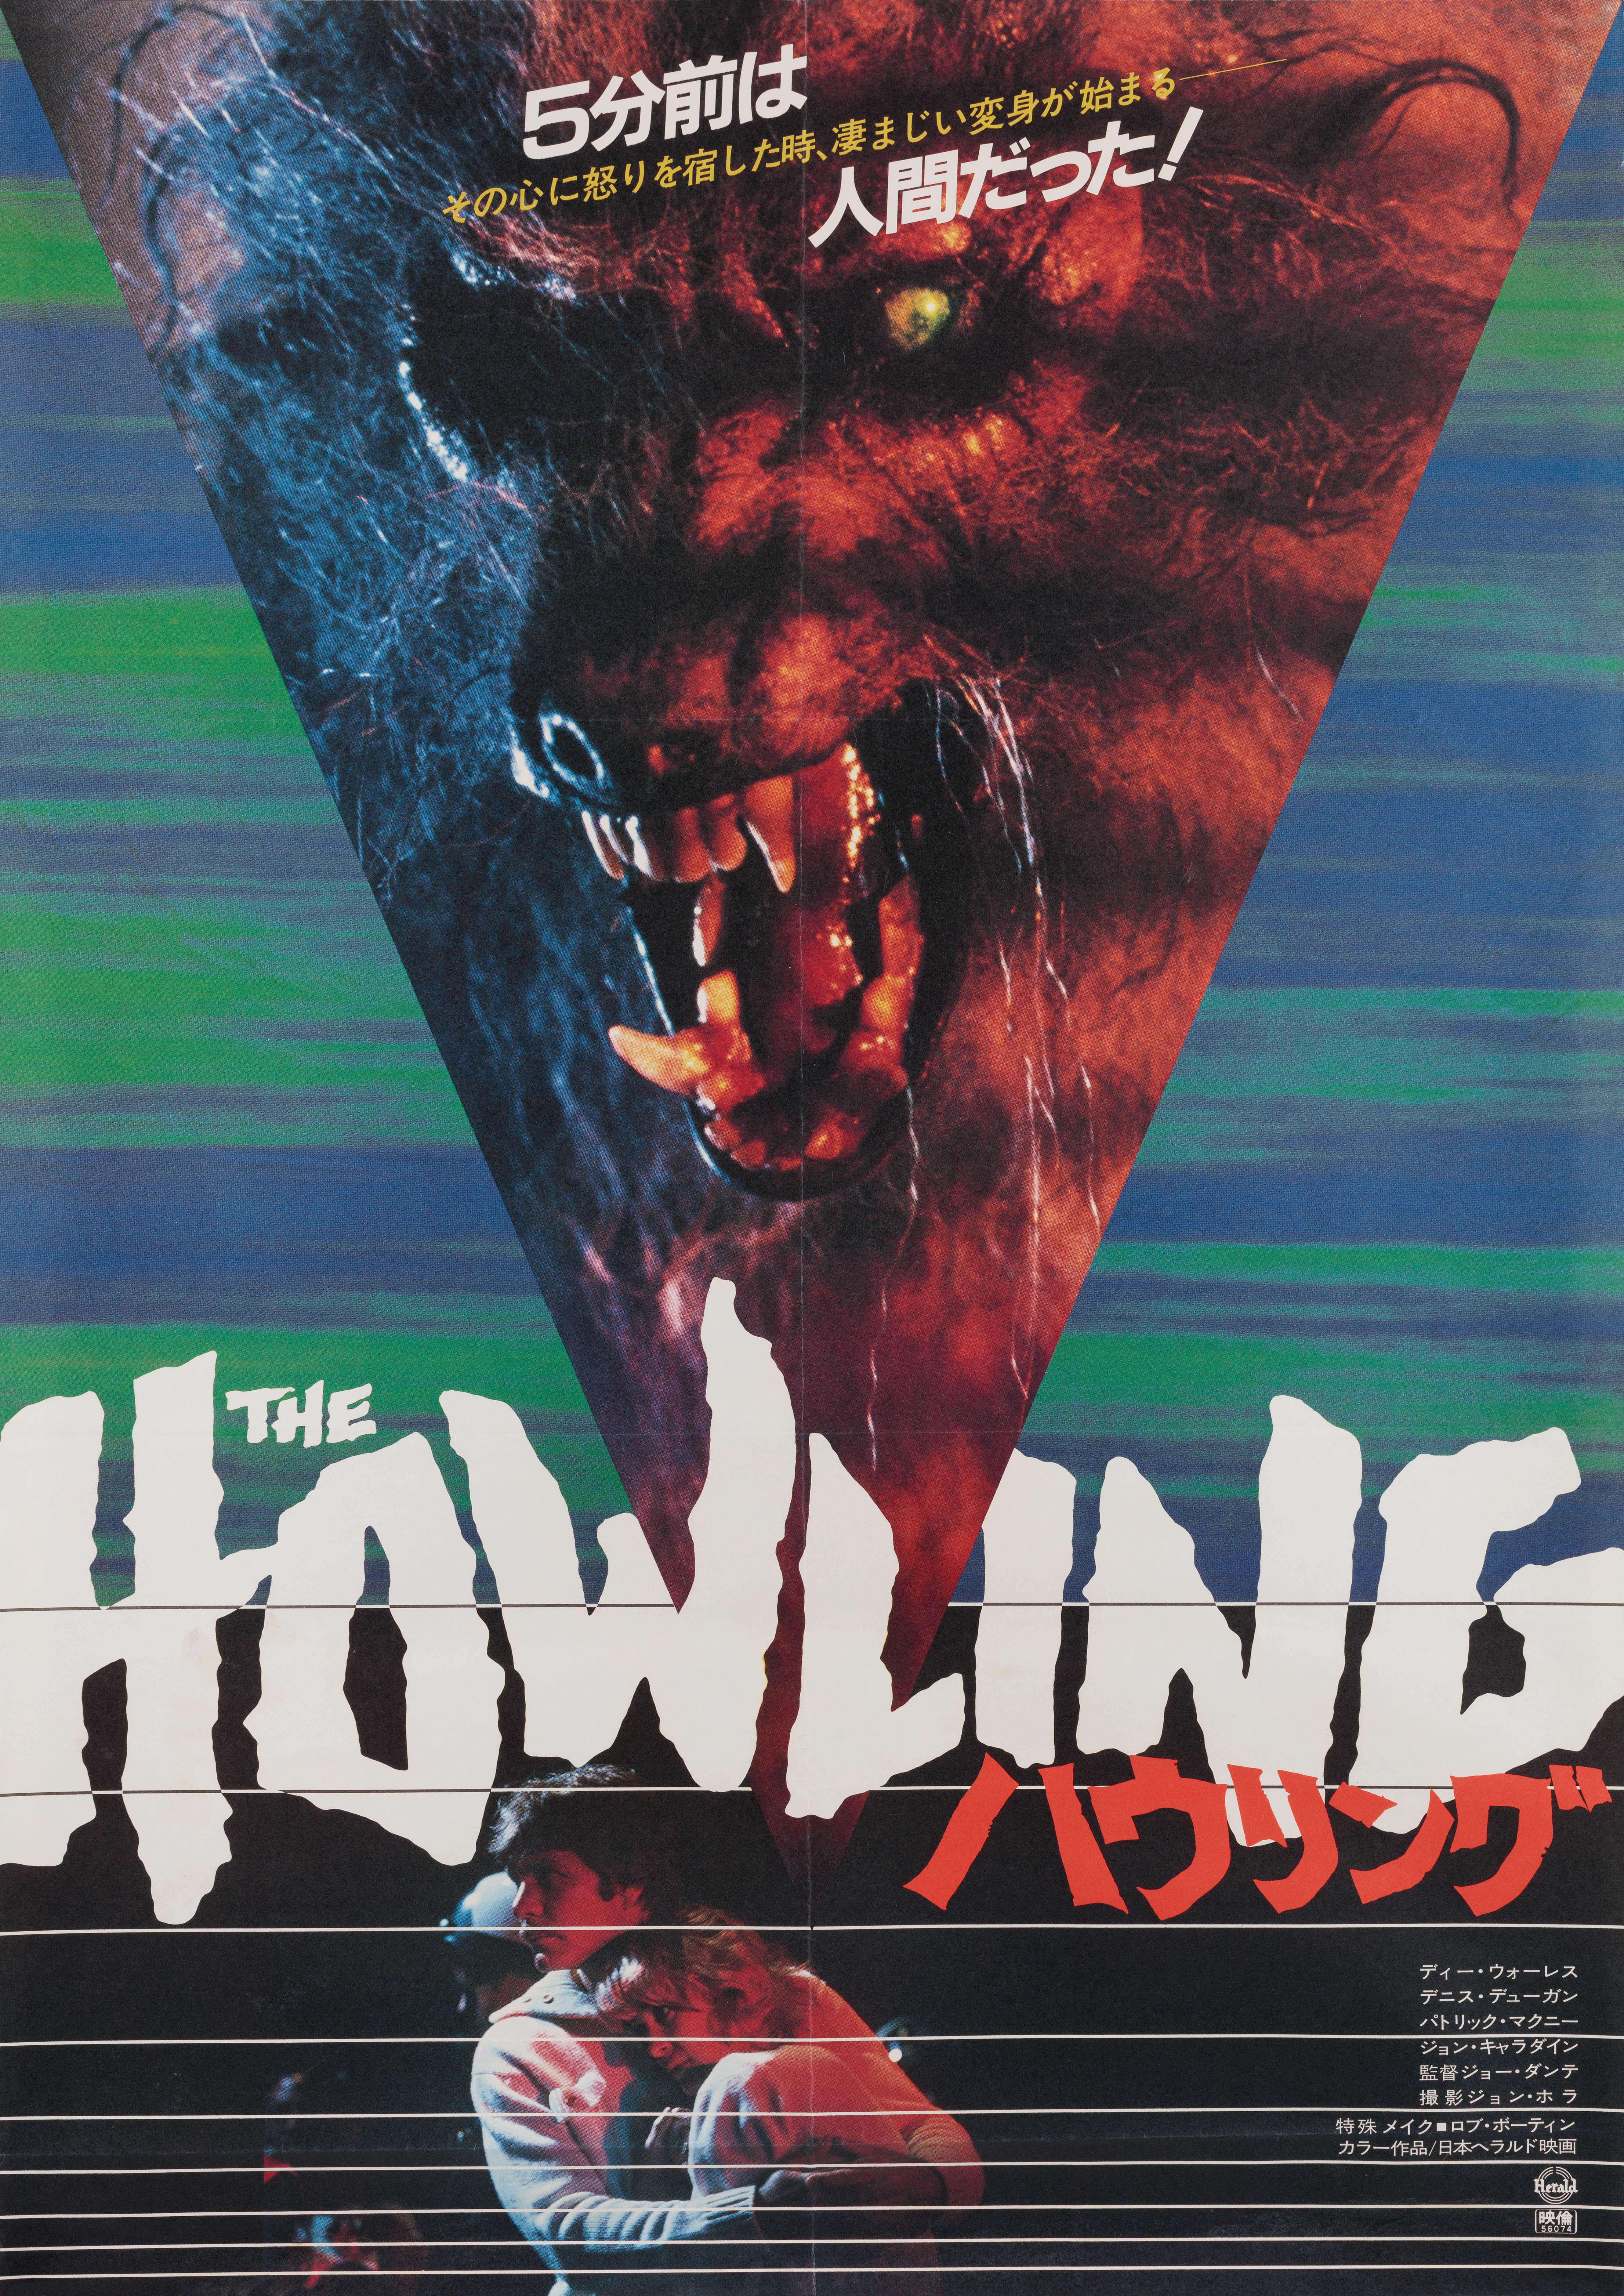 Вой (The Howling, 1981), режиссёр Джо Данте, японский постер к фильму (ужасы, 1981 год)